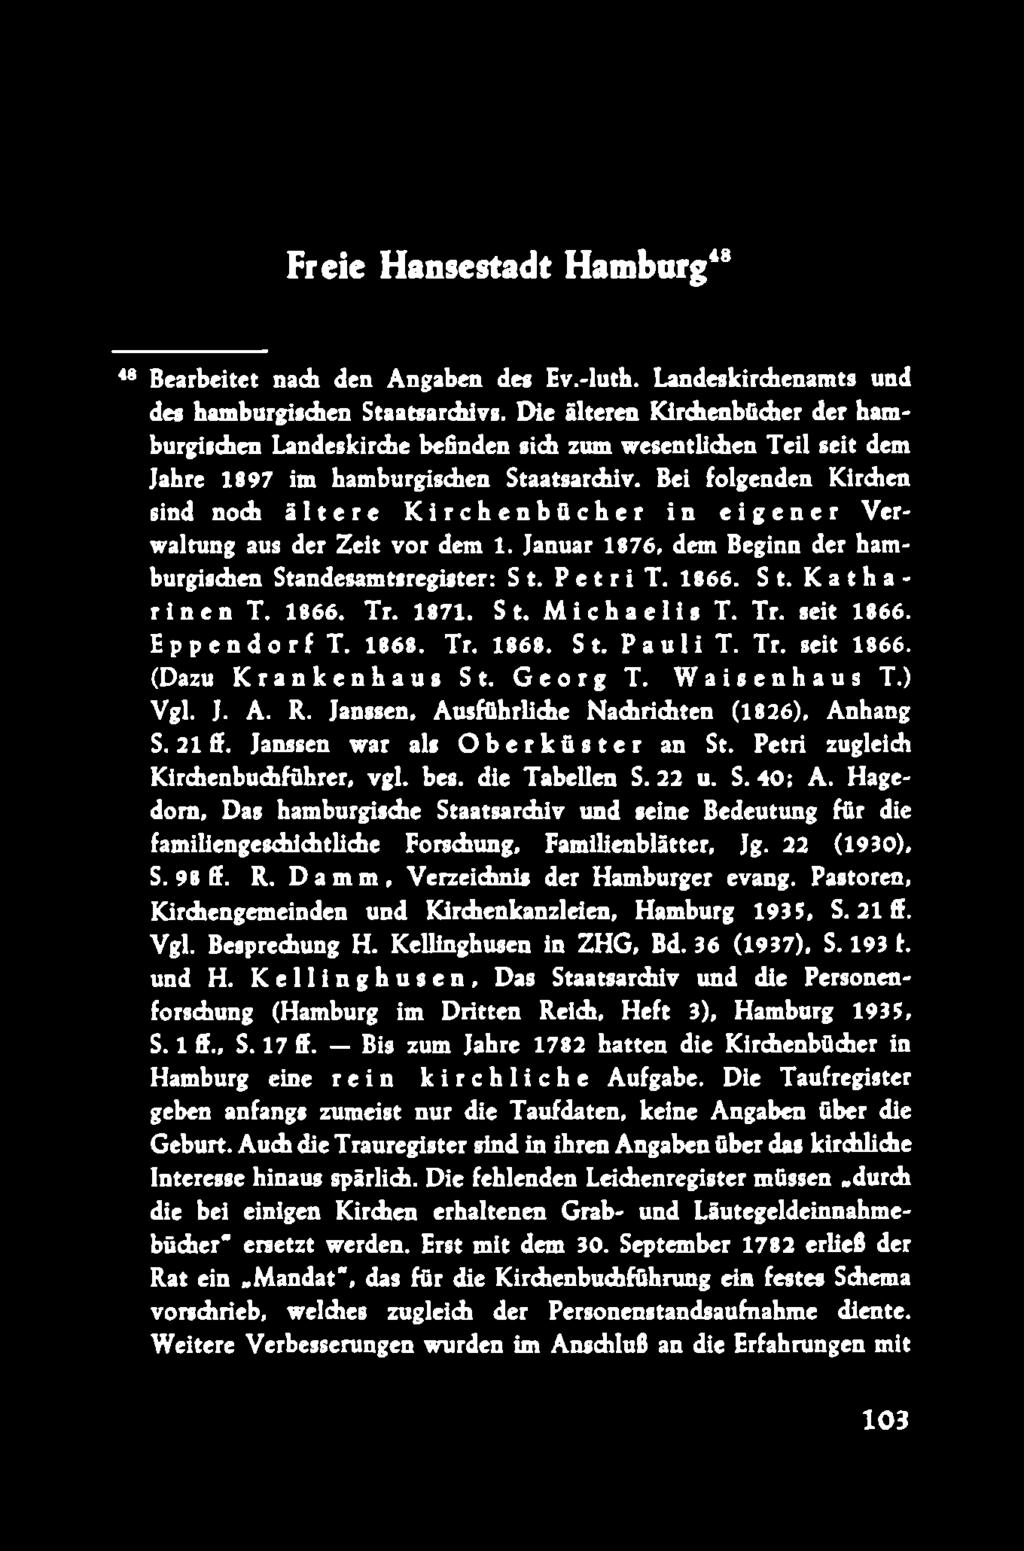 Bei folgenden Kirchen sind noch ältere Kirchenbücher in eigener V erwaltung aus der Zeit vor dem 1. Januar 1876, dem Beginn der hamburgischen Standesamtsregister: S t. P e t r i T. 1866. S t. K a th a rinen T.